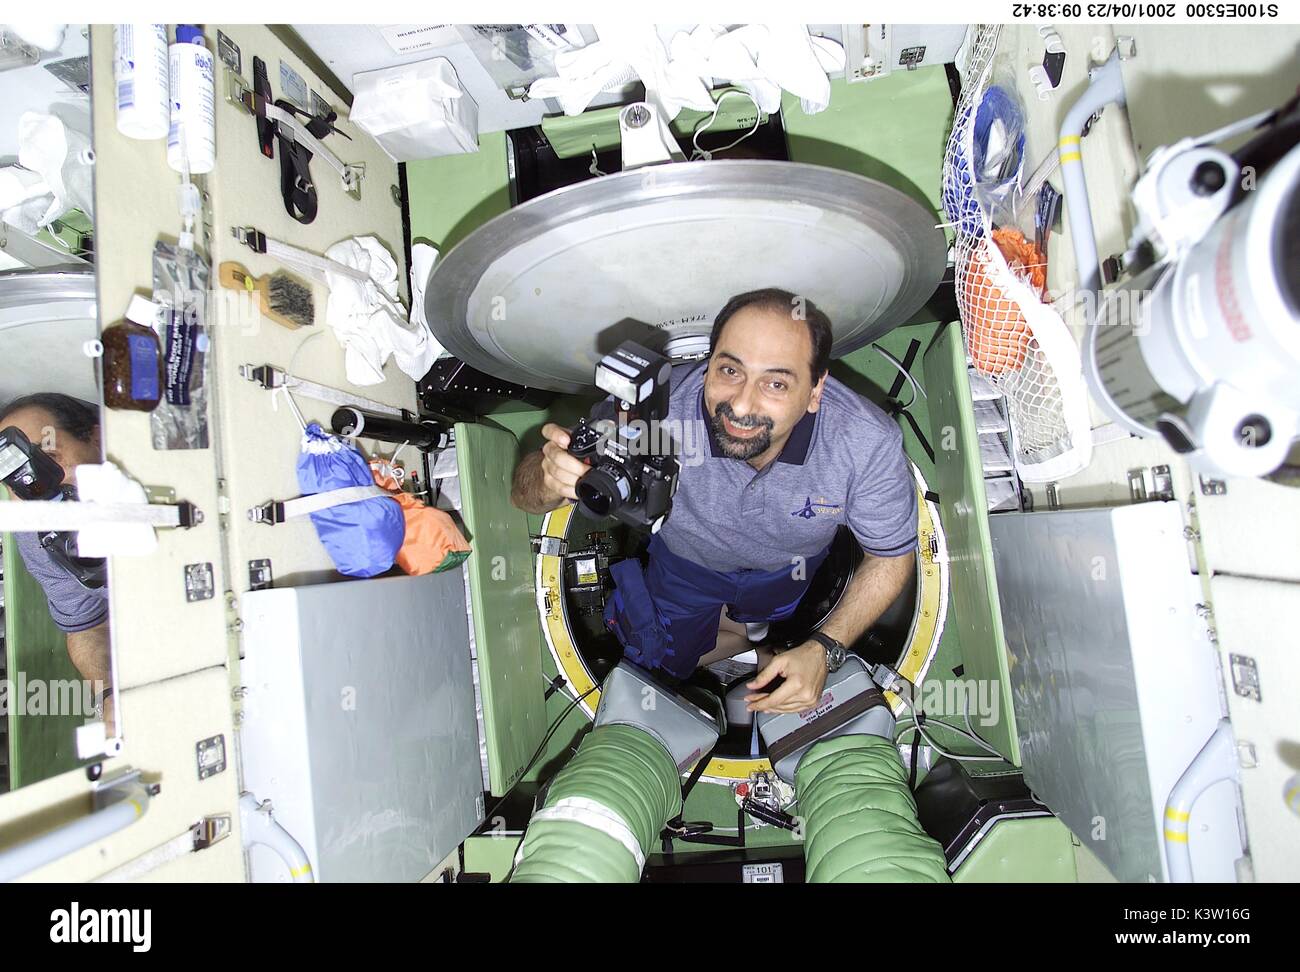 NASA Navette spatiale Endeavour STS-100 mission premier membre d'équipage italien Umberto Guidoni astronaute de l'Agence spatiale européenne émerge de la trappe dans le module de service Zvezda de la Station spatiale internationale le 23 avril 2001, dans l'orbite de la Terre. (Photo de la NASA Photo via Planetpix) Banque D'Images